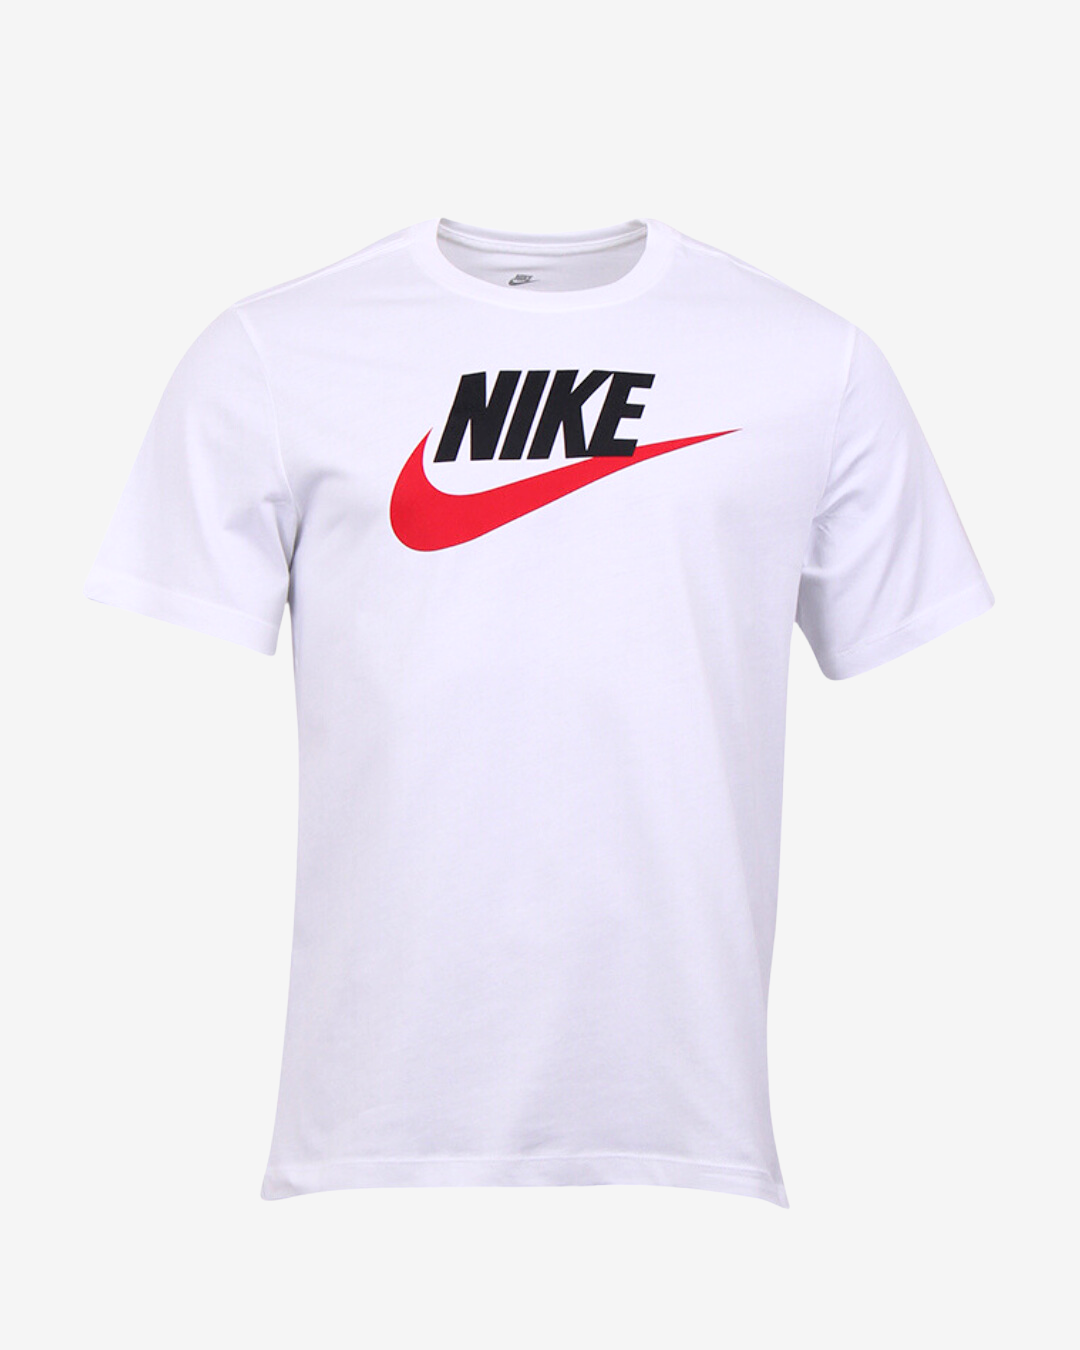 Billede af Nike Icon futura t-shirt - Hvid / Rød - Str. S - Modish.dk